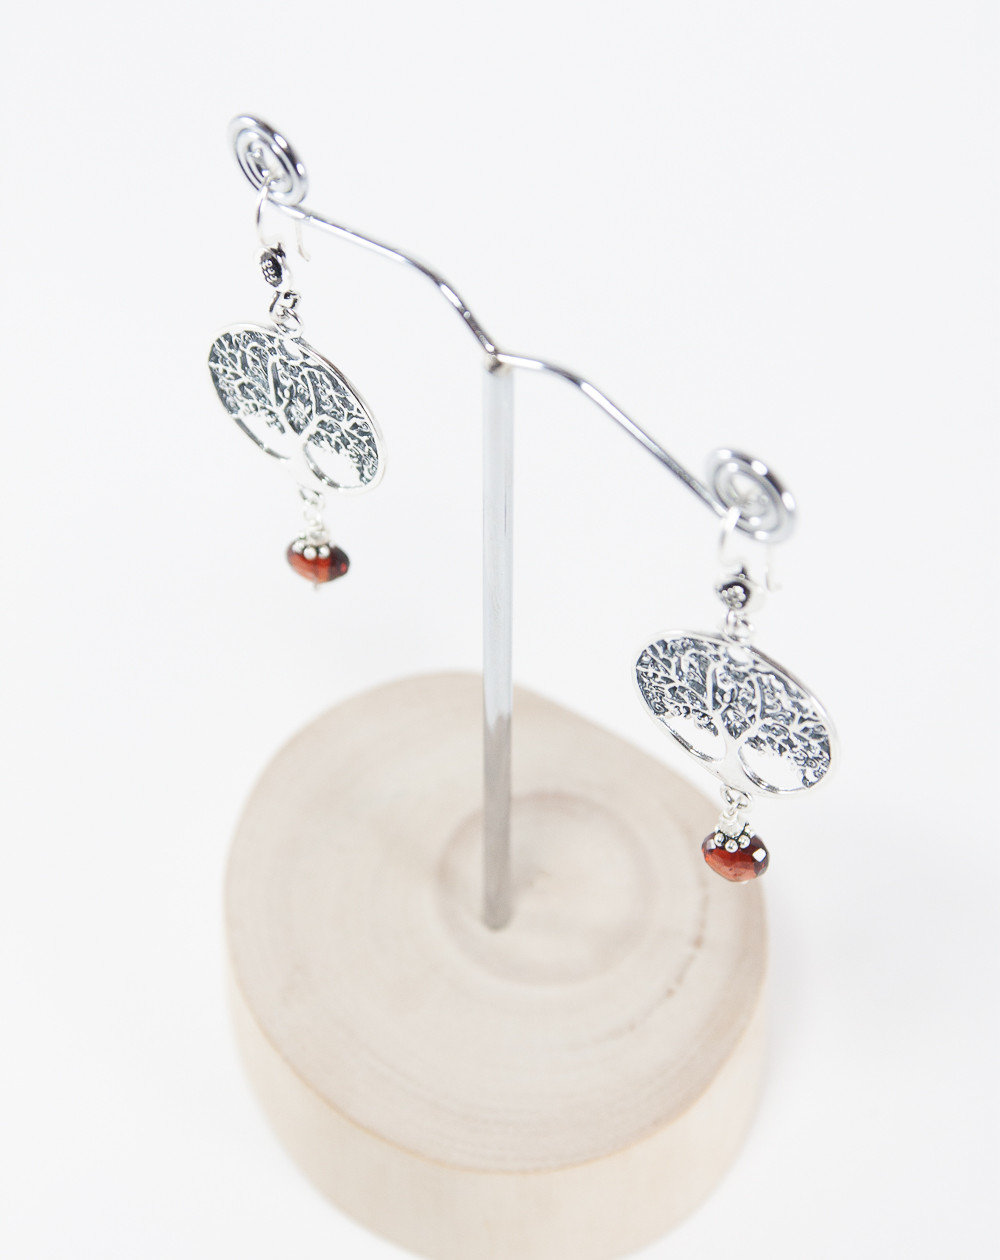 Boucles d'oreilles Arbre de vie Grenat, Collection Kimua. Sanuk Création